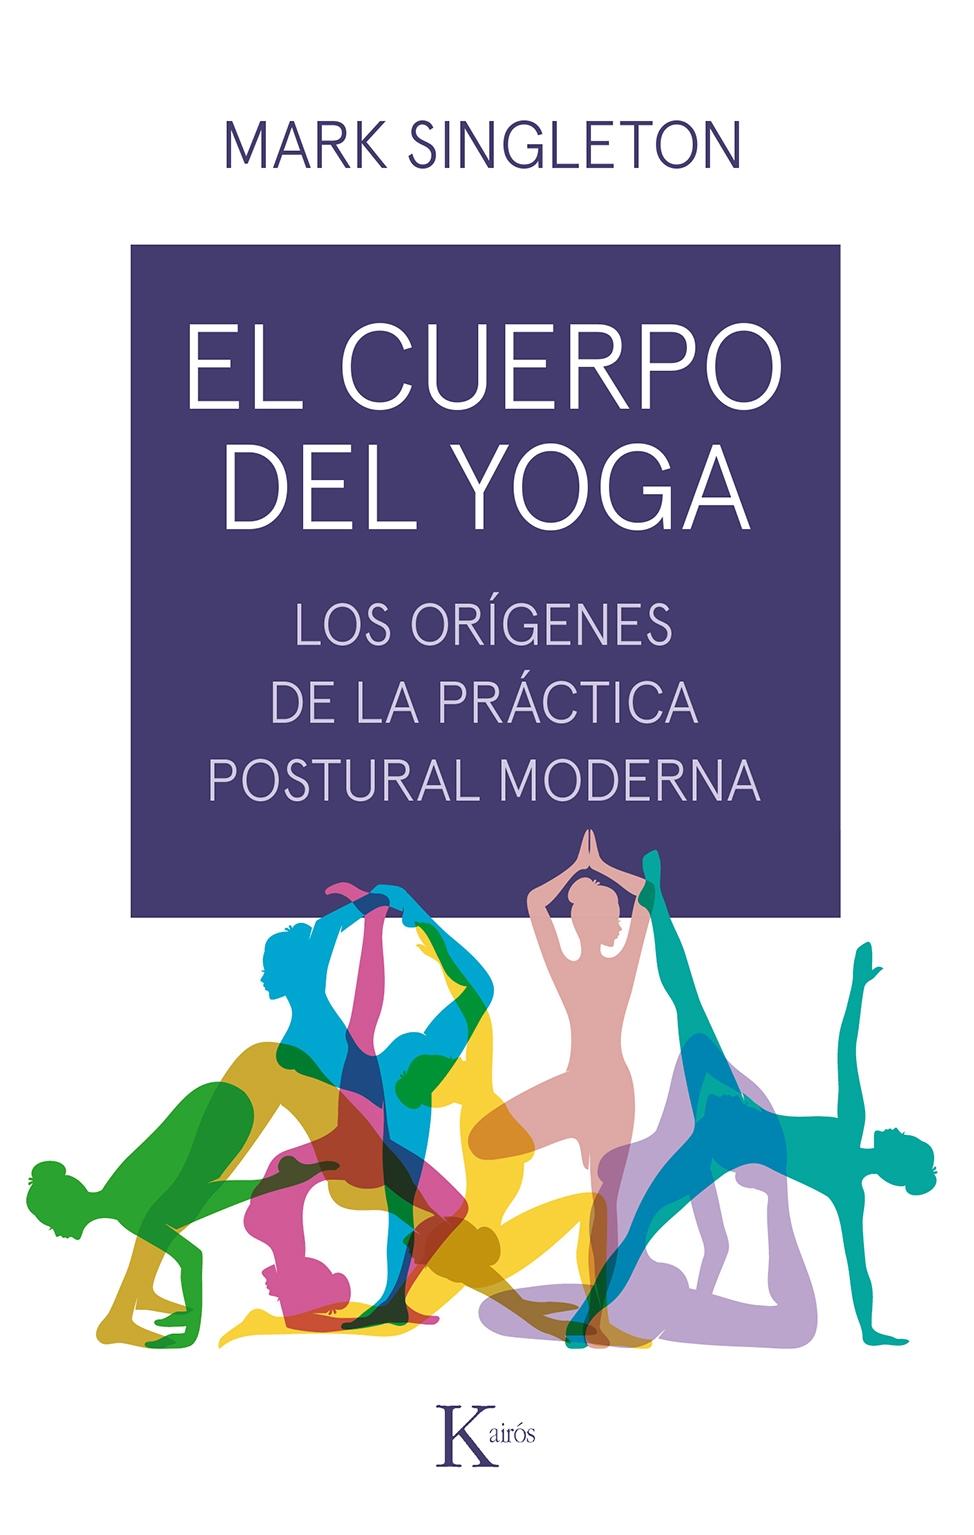 El cuerpo del yoga "Los orígenes de la práctica postural moderna"